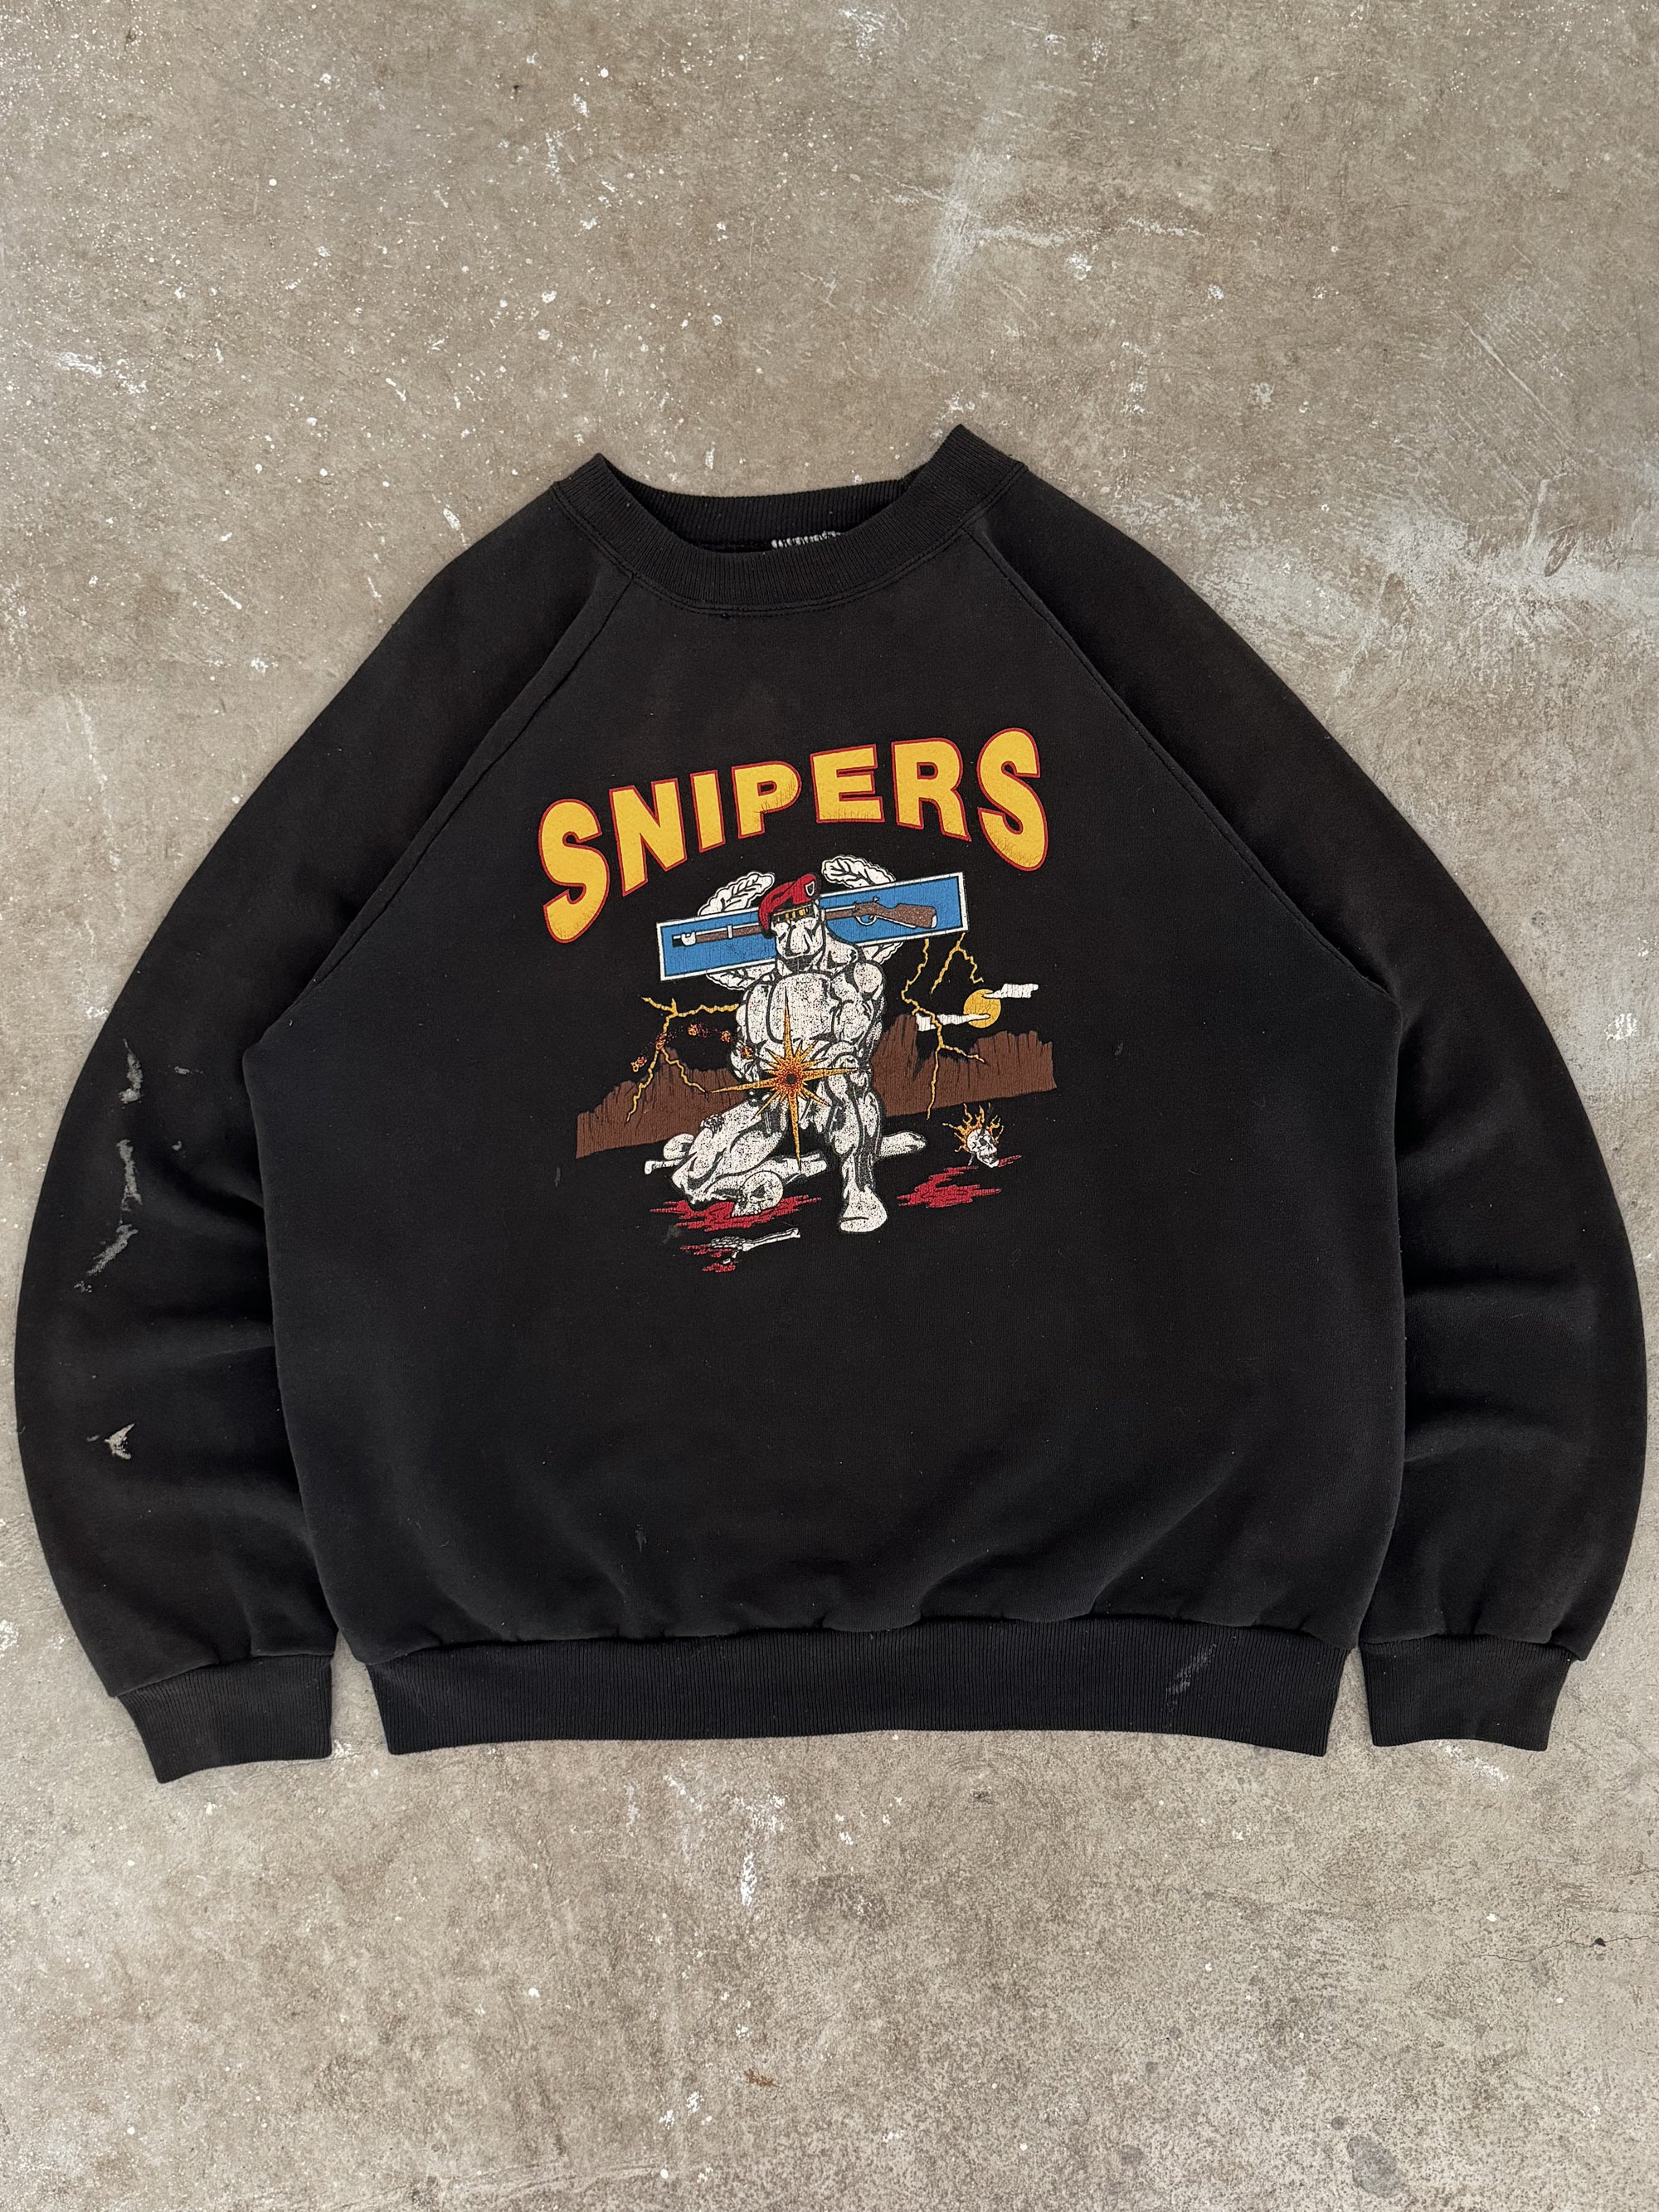 1990s "Snipers" Sweatshirt (L)